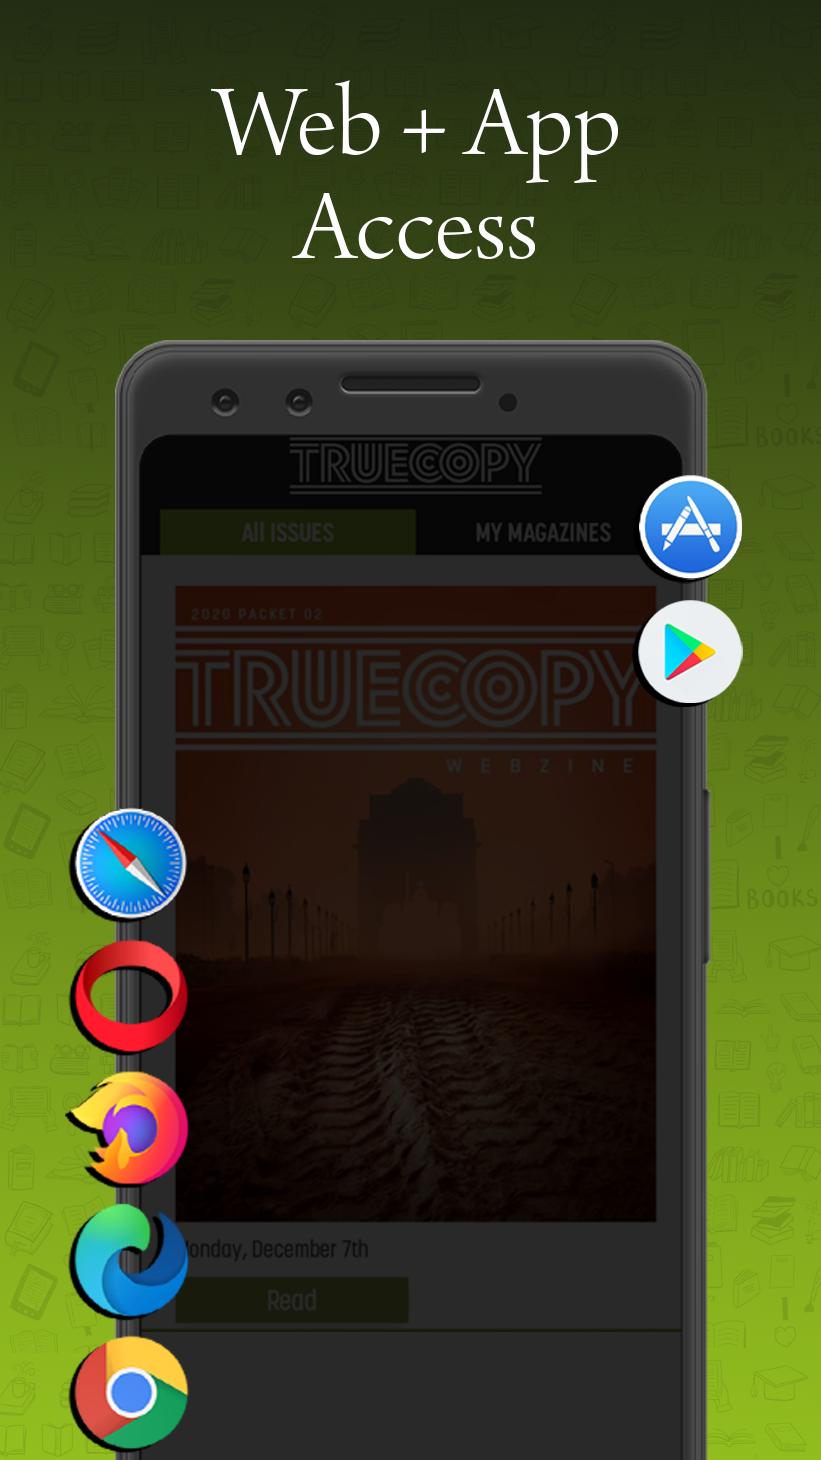 Truecopy Webzine 2.6 Screenshot 13